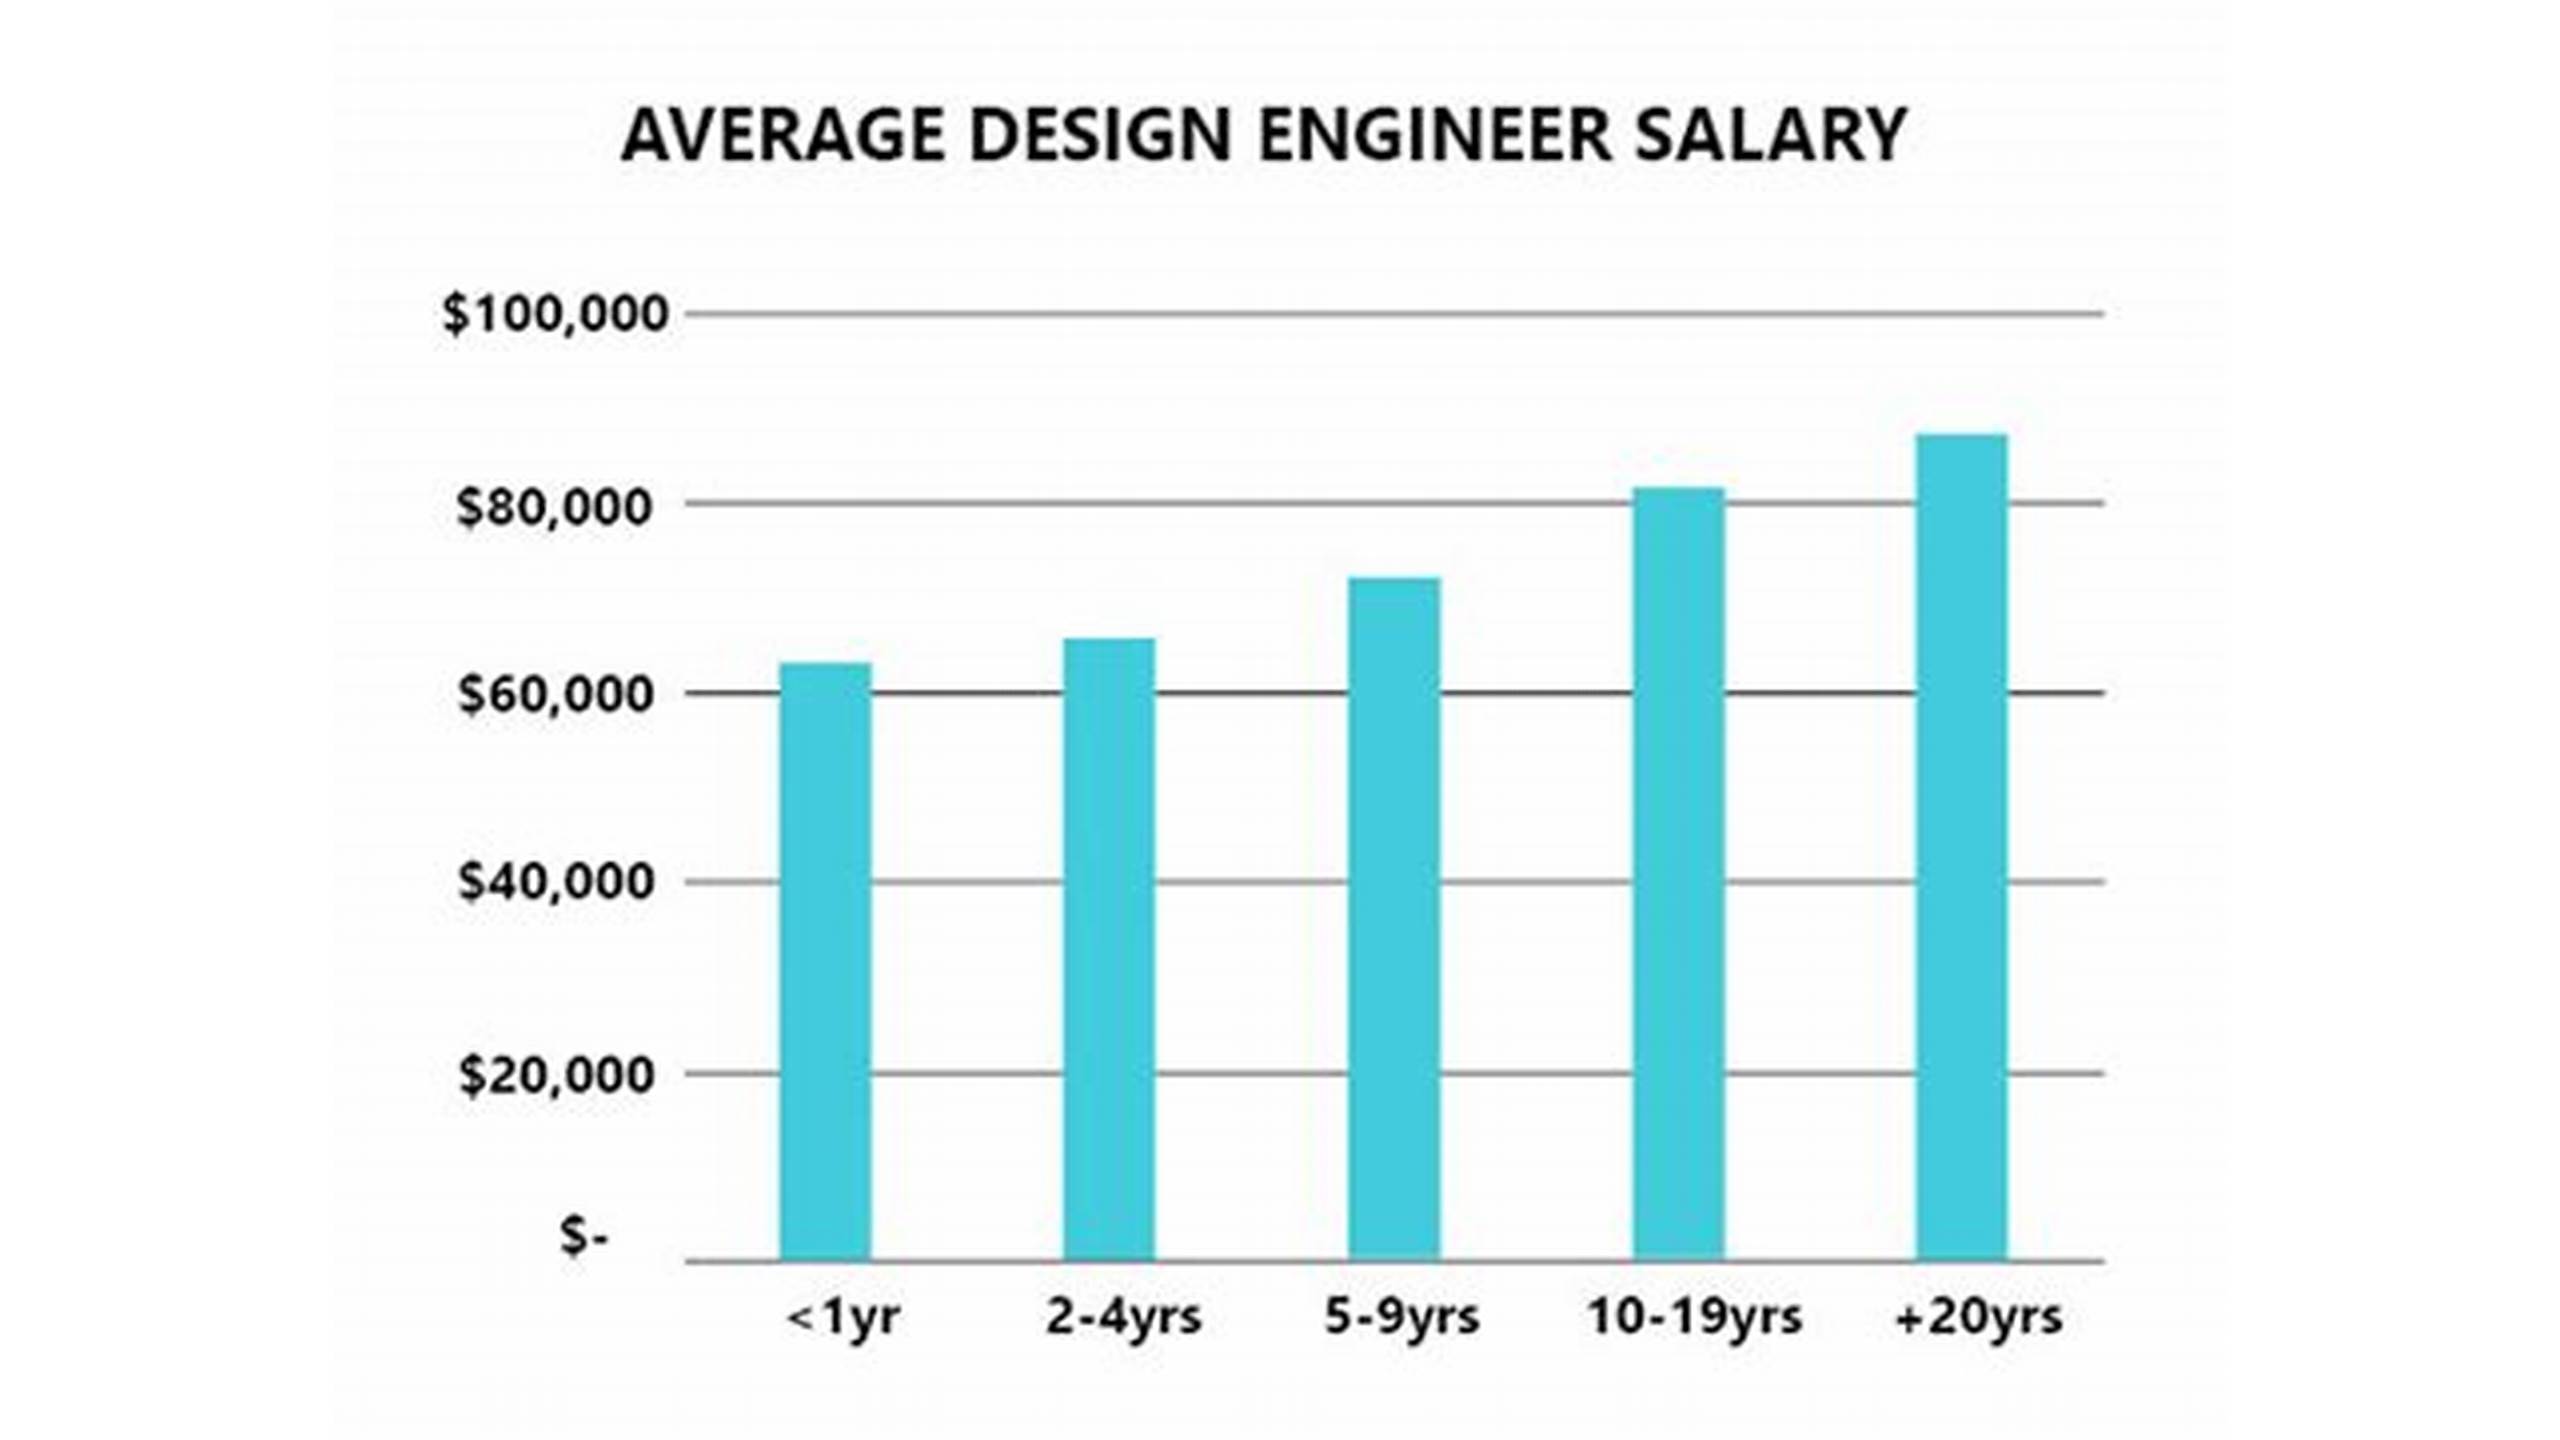 Design Engineer Salaries Across Different Industries